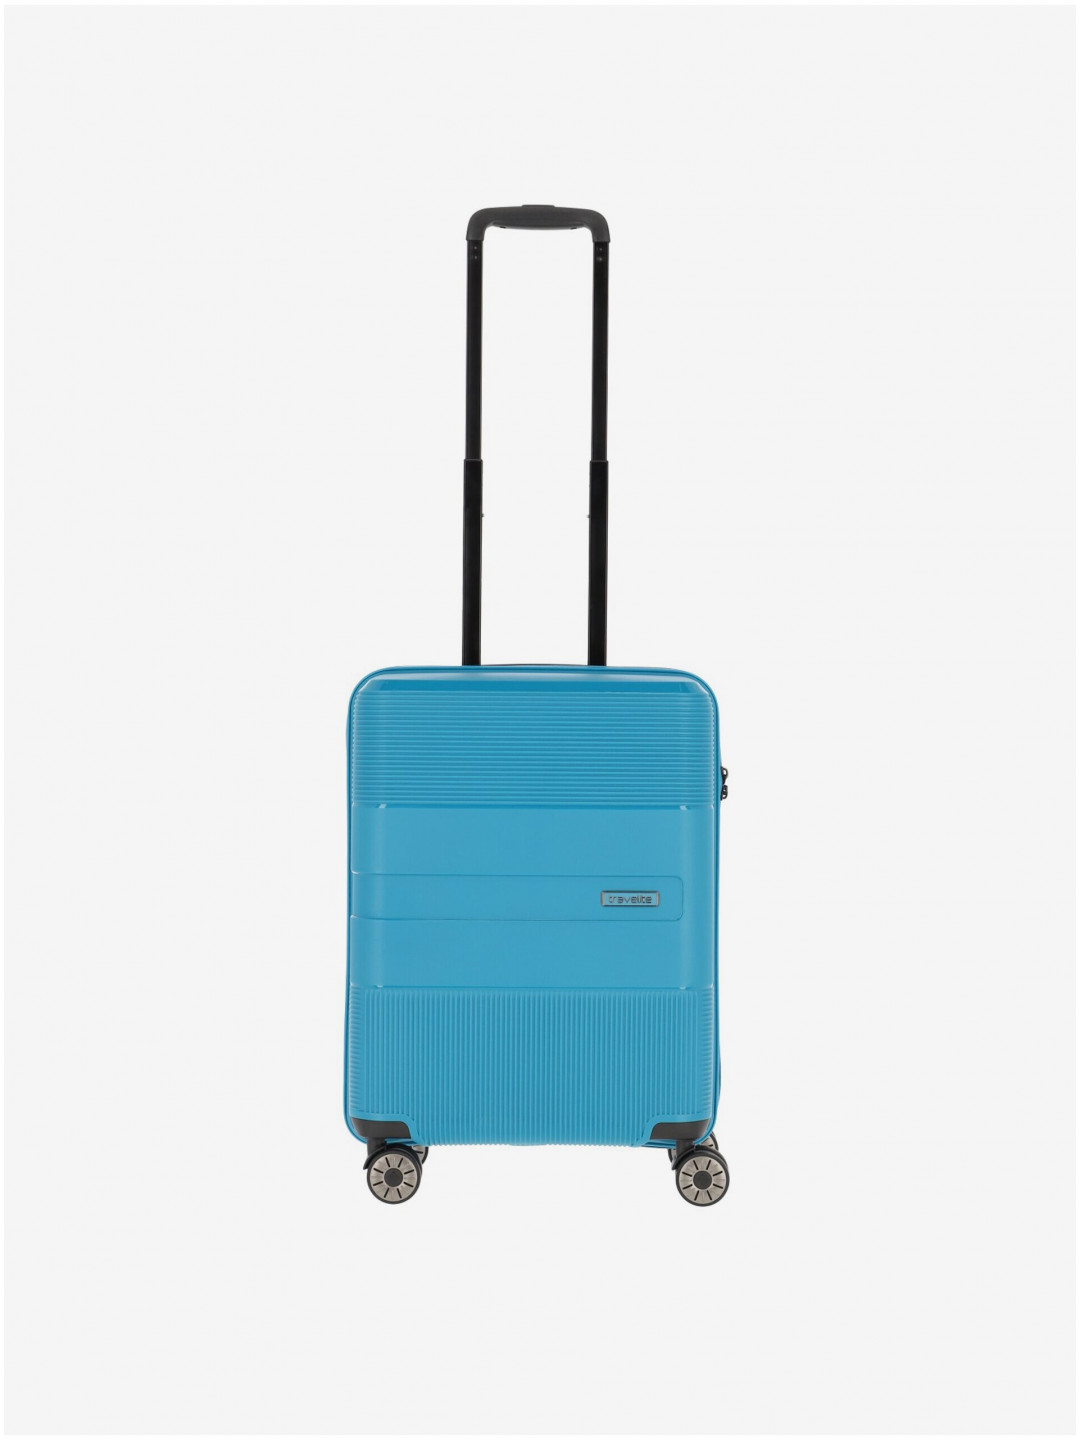 Tyrkysový cestovní kufr Travelite Waal S Turquoise